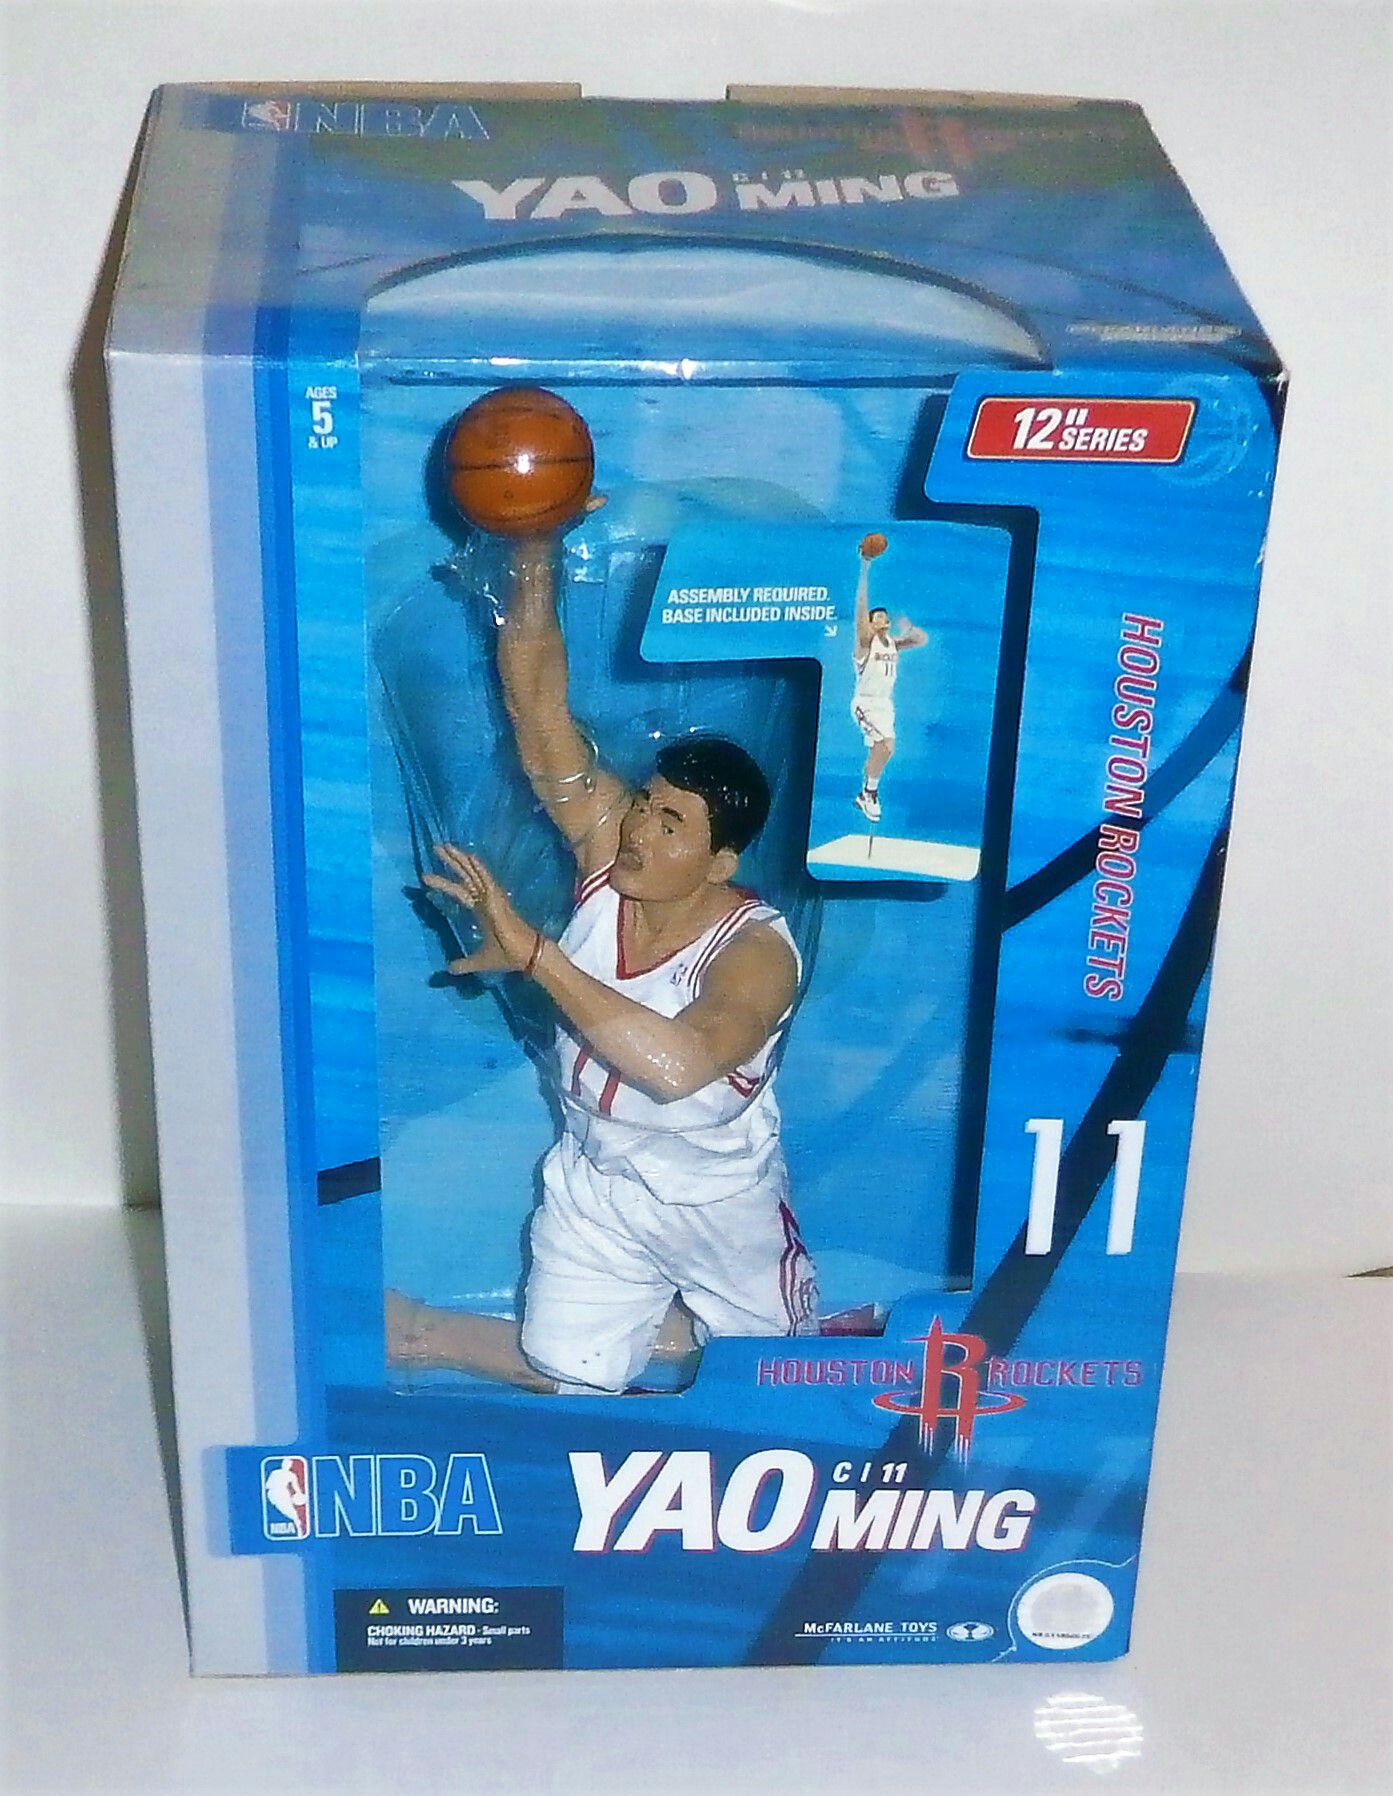 2004 McFarlane Toys 12" NBA Yao Ming Figure In Box